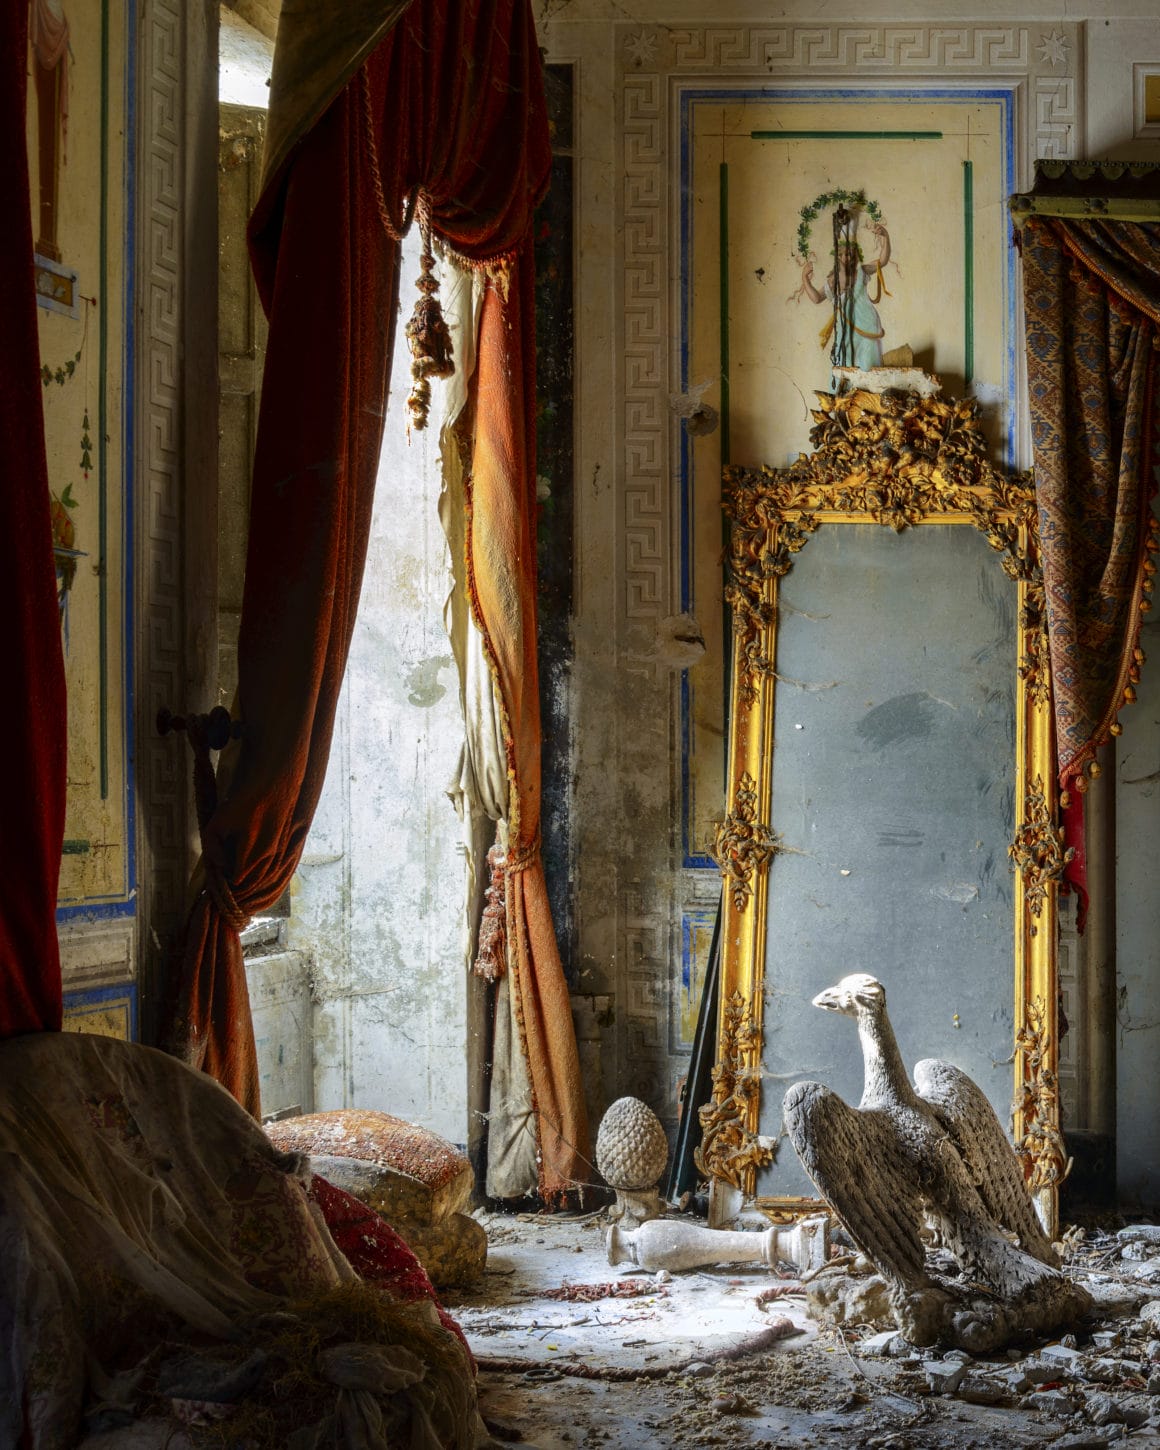 Partie d'une pièce abandonnée avec de longs rideaux rouges, un miroir et d'autres objets à terre